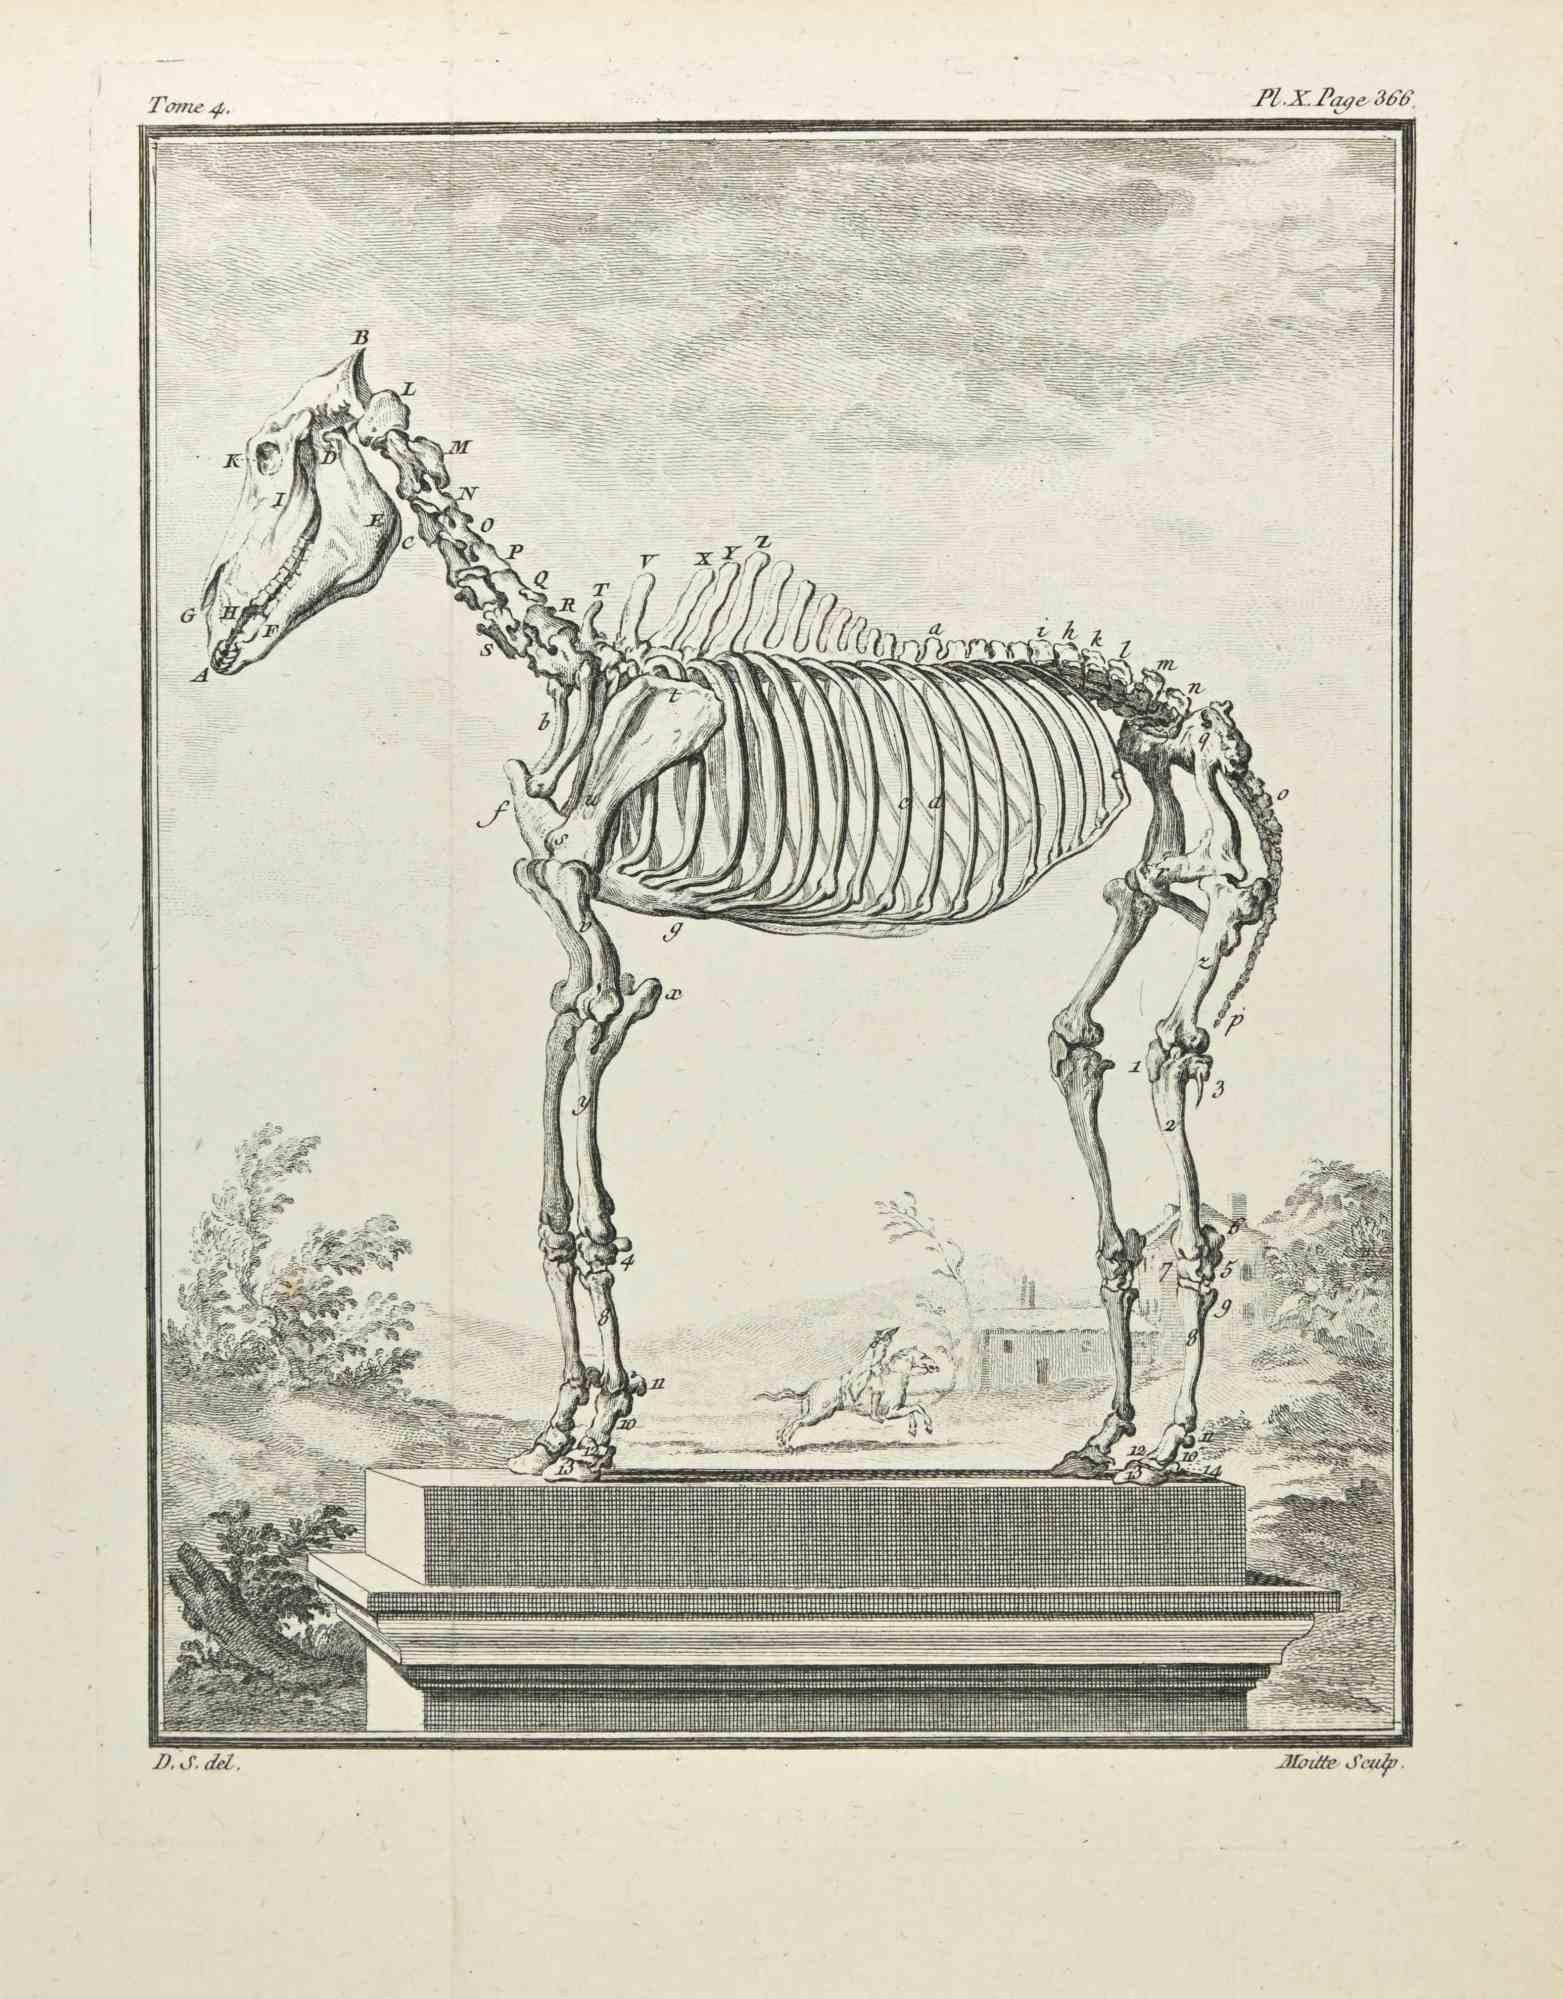 Squelette est une gravure réalisée par Jean Gullaume Moitte en 1771.

Il appartient à la suite "Histoire naturelle, générale et particulière avec la description du Cabinet du Roi".

Signature de l'Artistics gravée en bas à droite.

Bon état, sauf